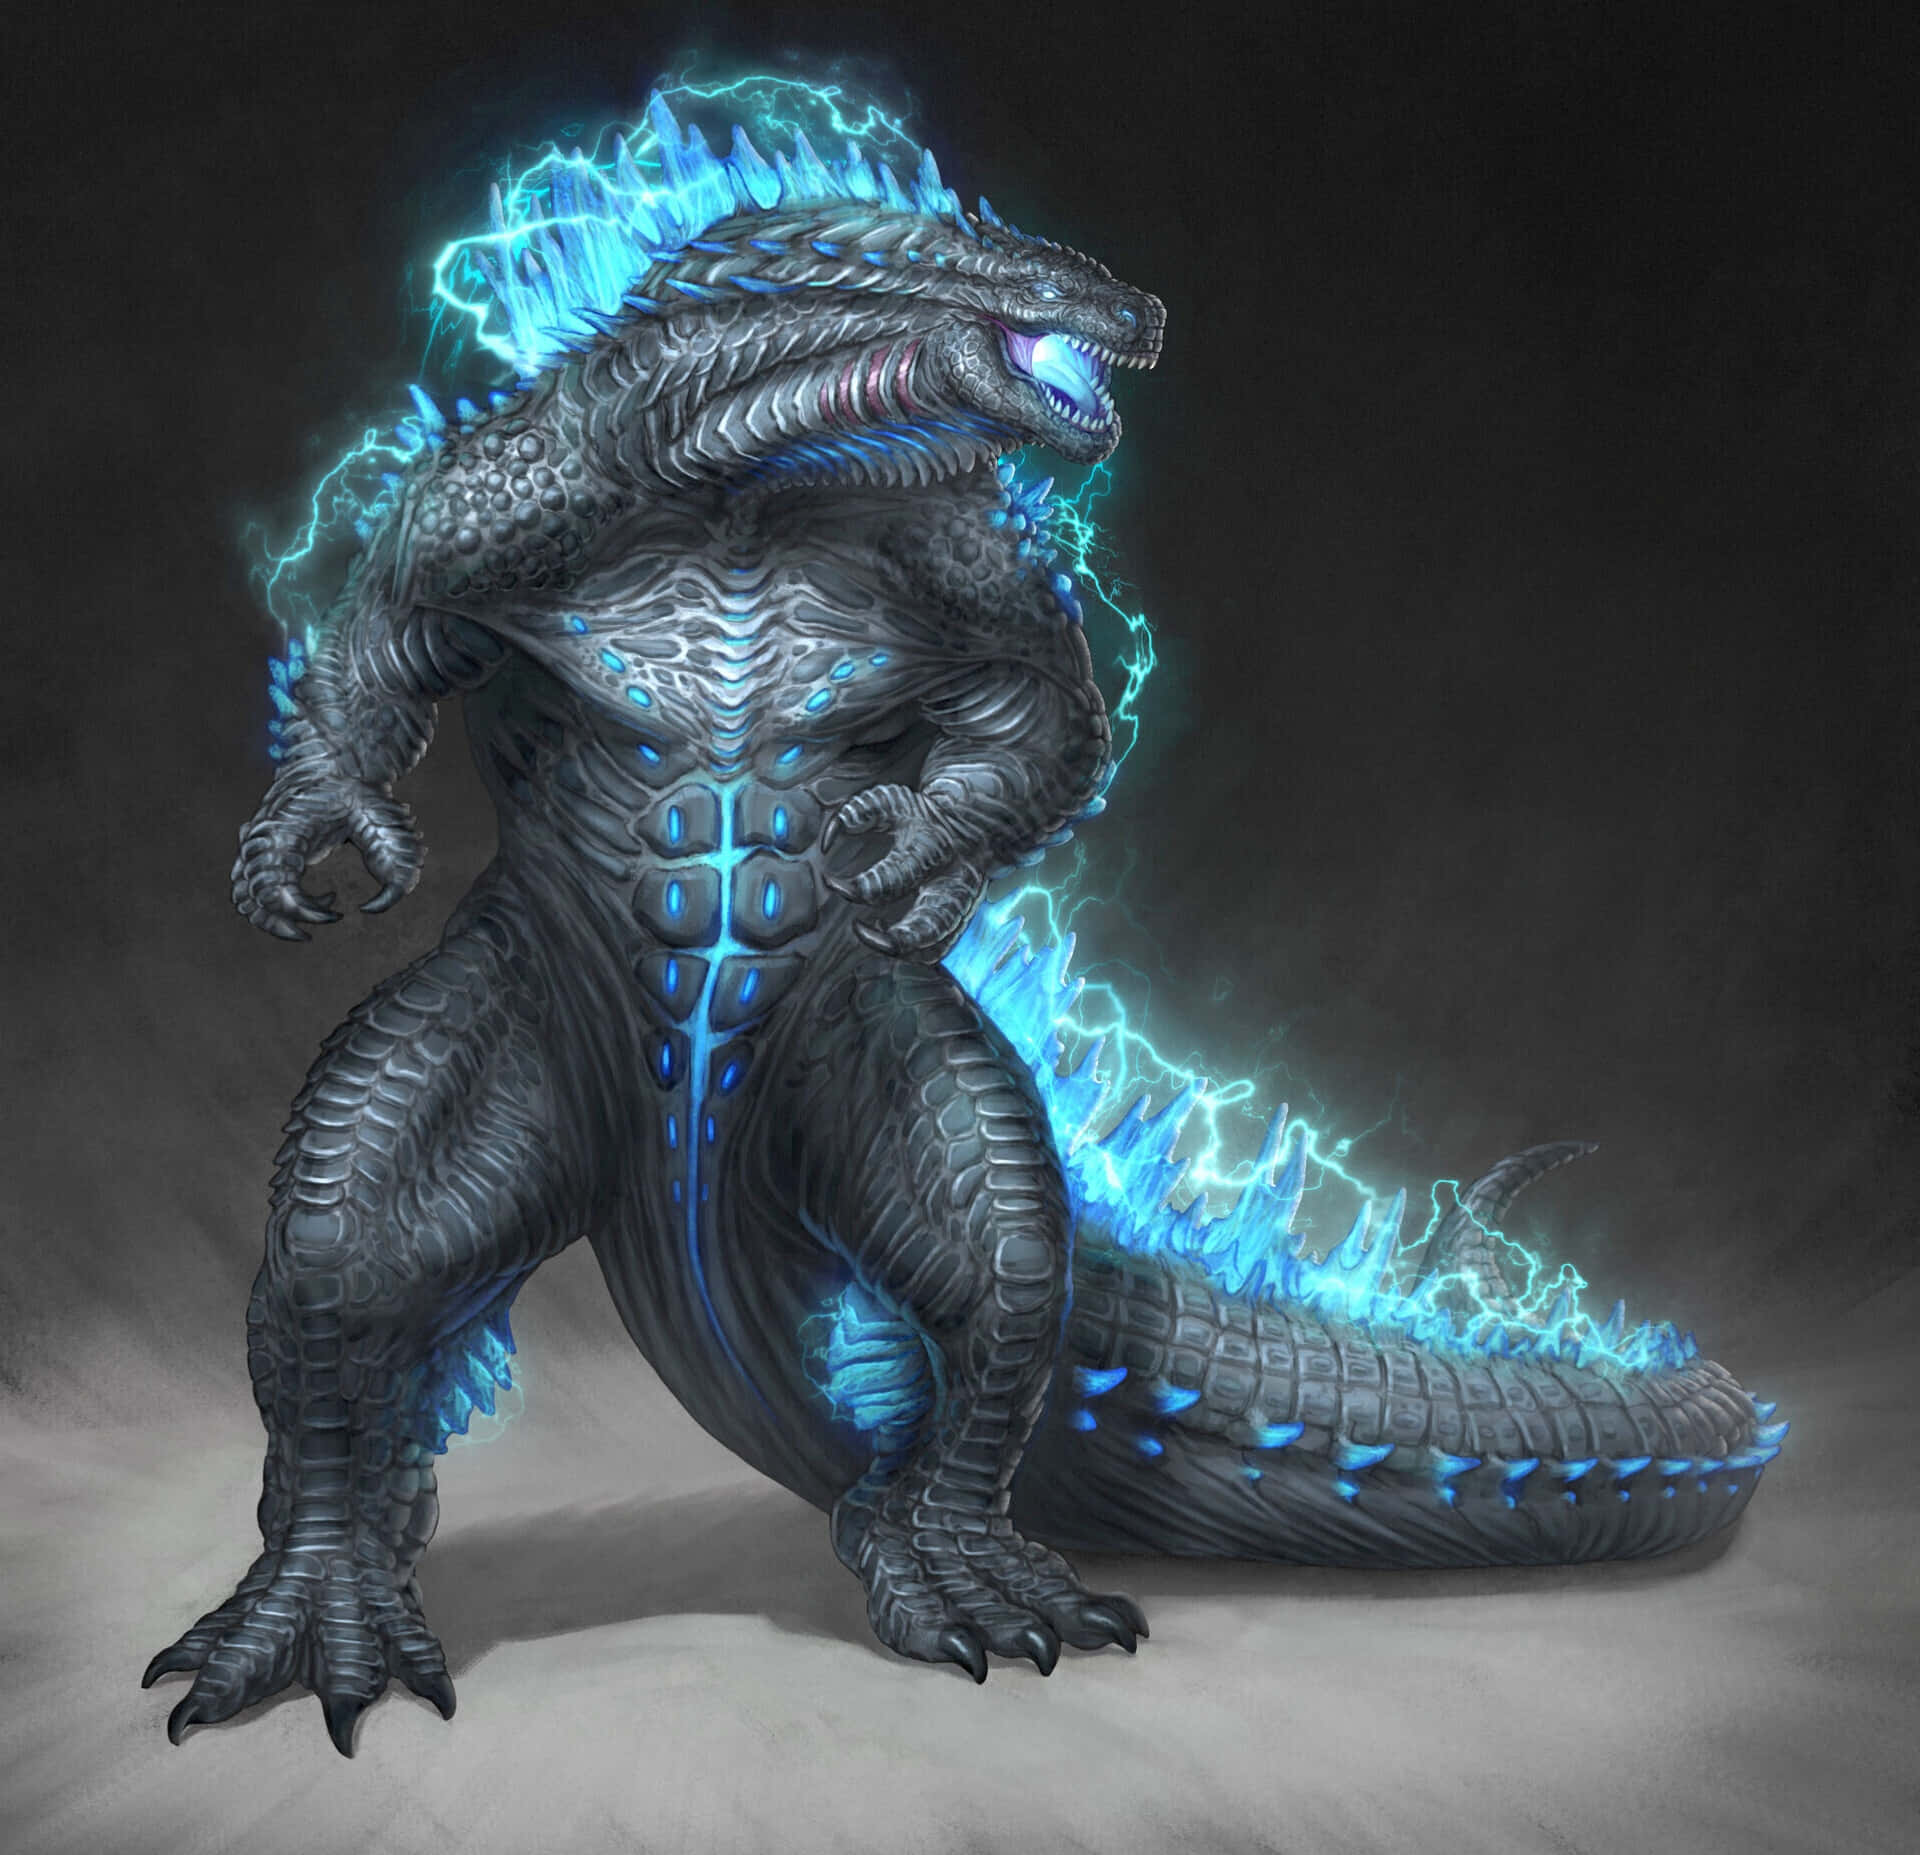 Imagende Godzilla En Estética Negra, Con Luces Neón Azules.